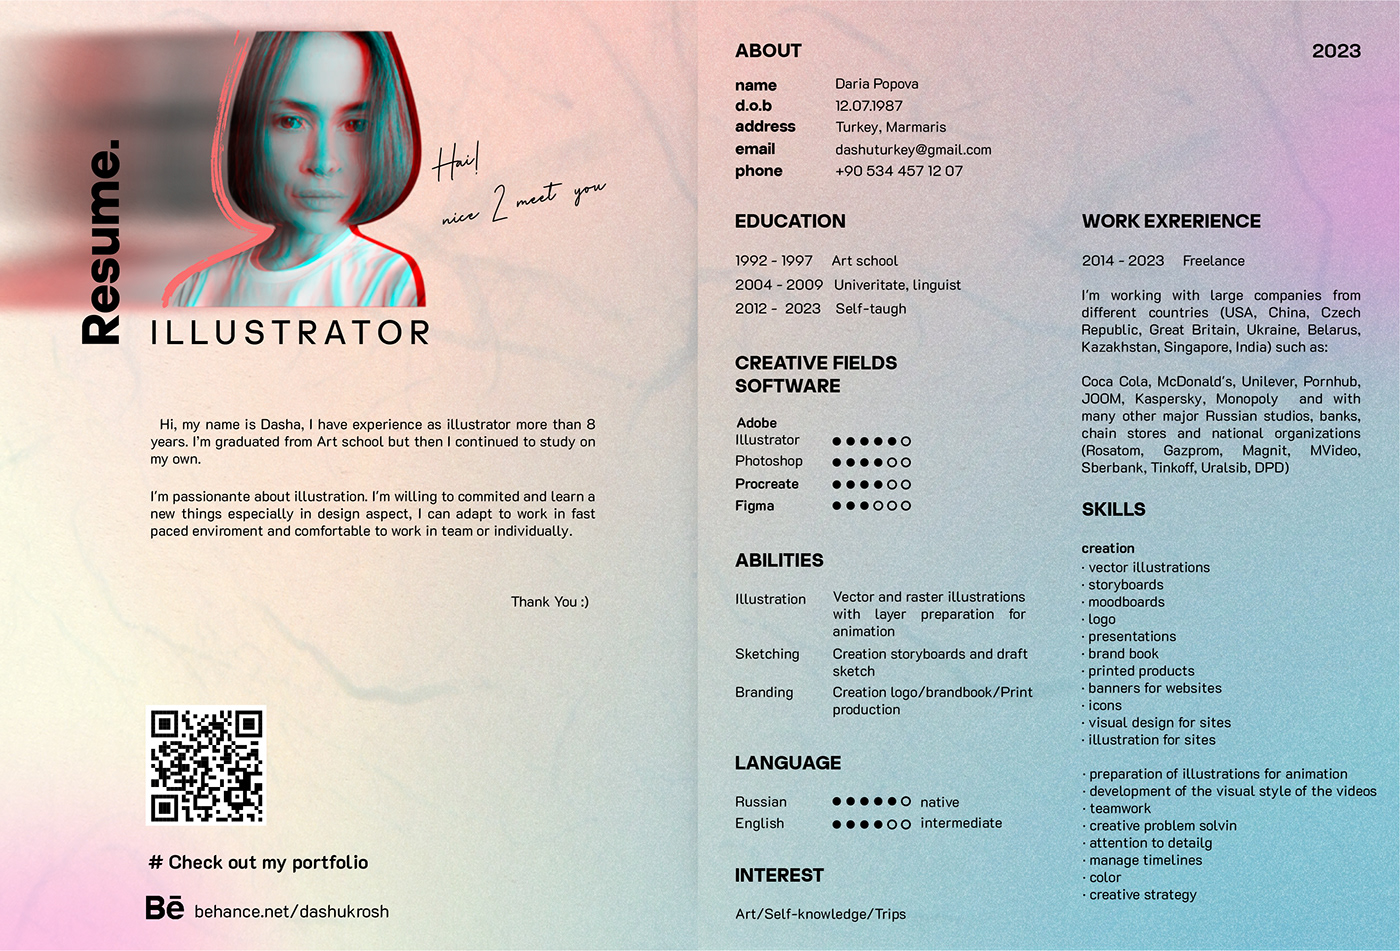 adobe illustrator digital illustration ILLUSTRATION  Illustrator Resume sketch vector